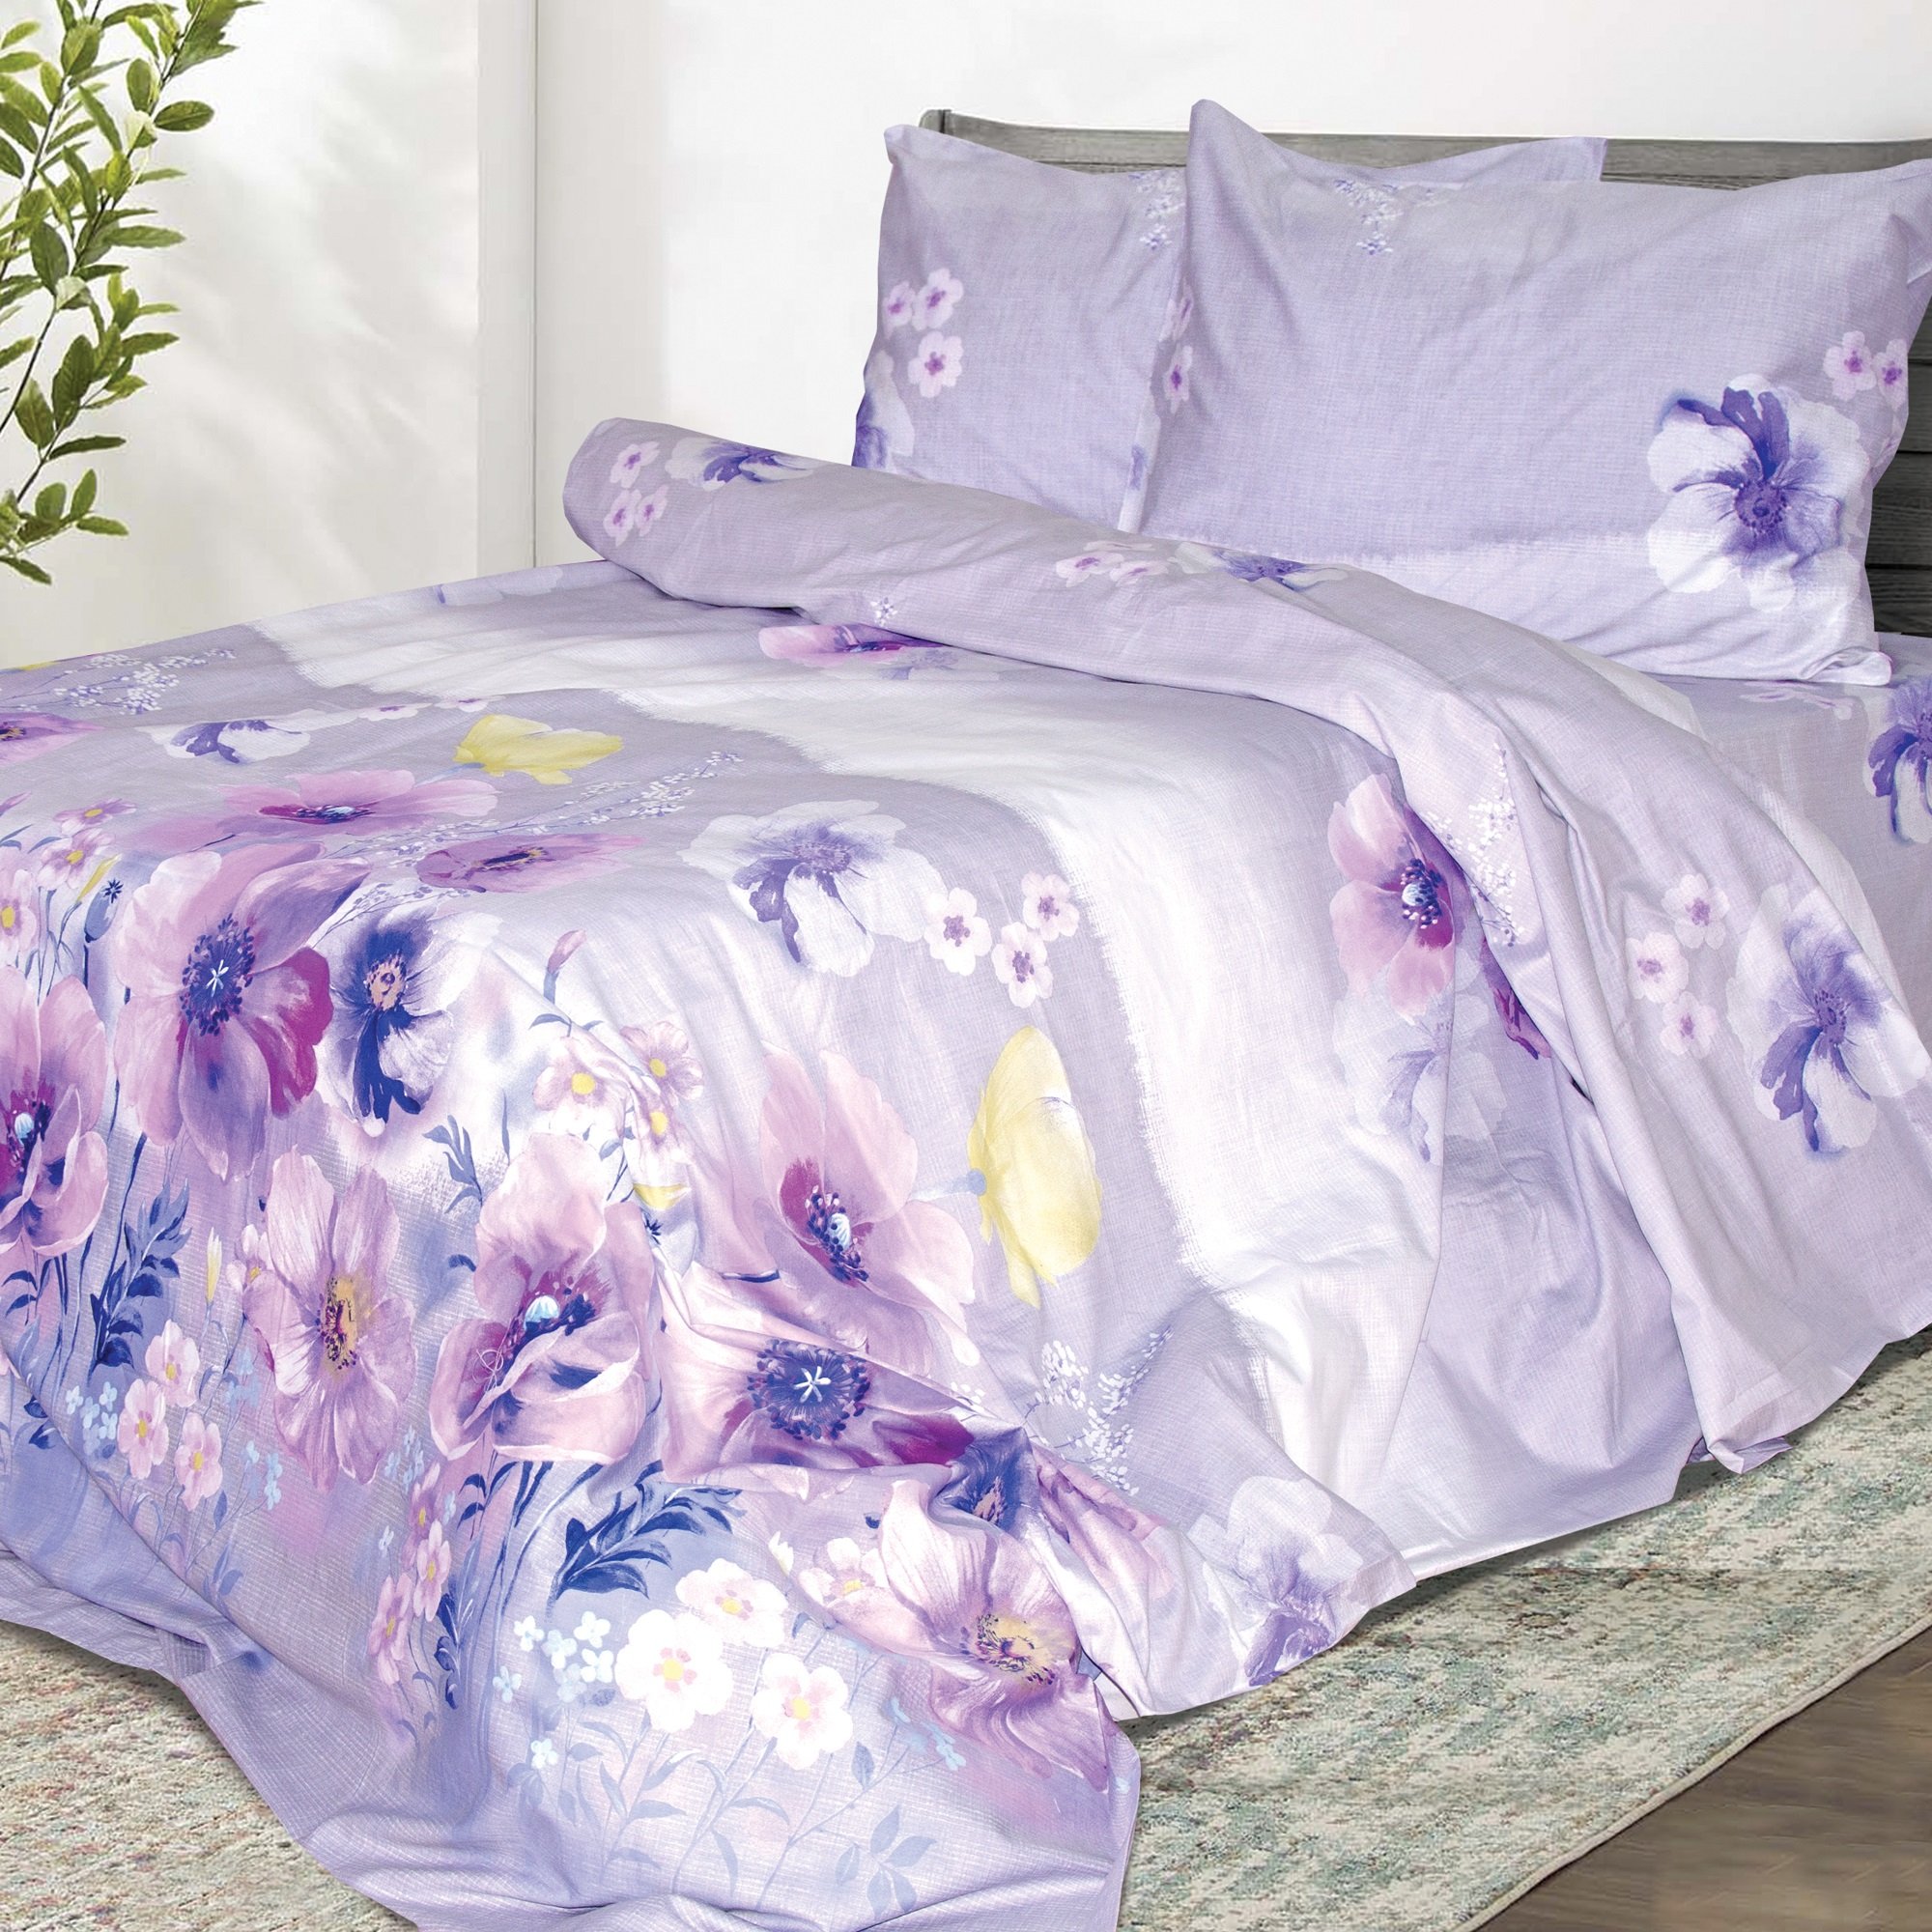 Комплект постельного белья Ярослав Сатин элегант se240 евро фиолетовый (48198) - фото 1